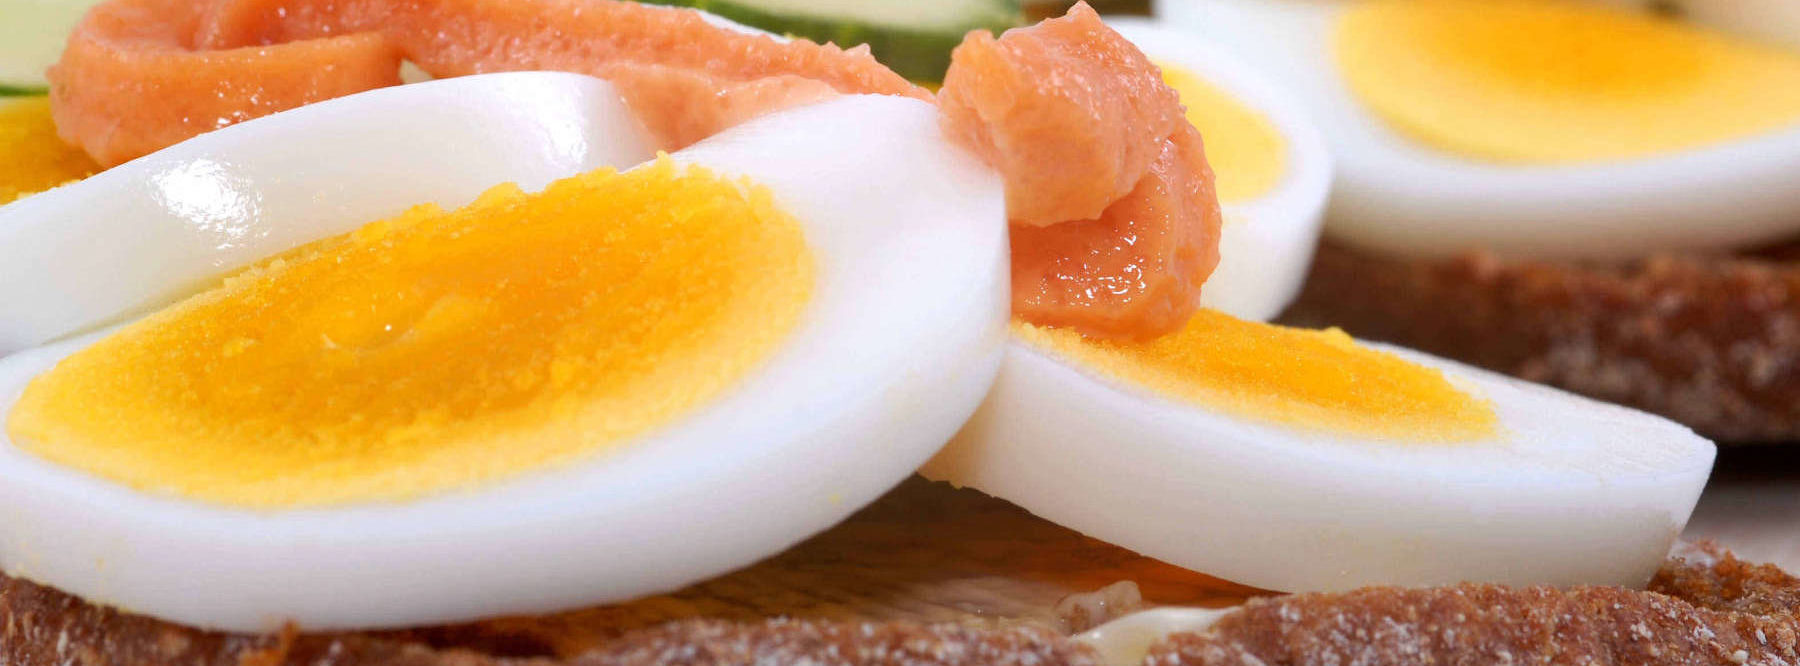 Imagen de huevos cocidos partidos en lonchas, salmon y pepino